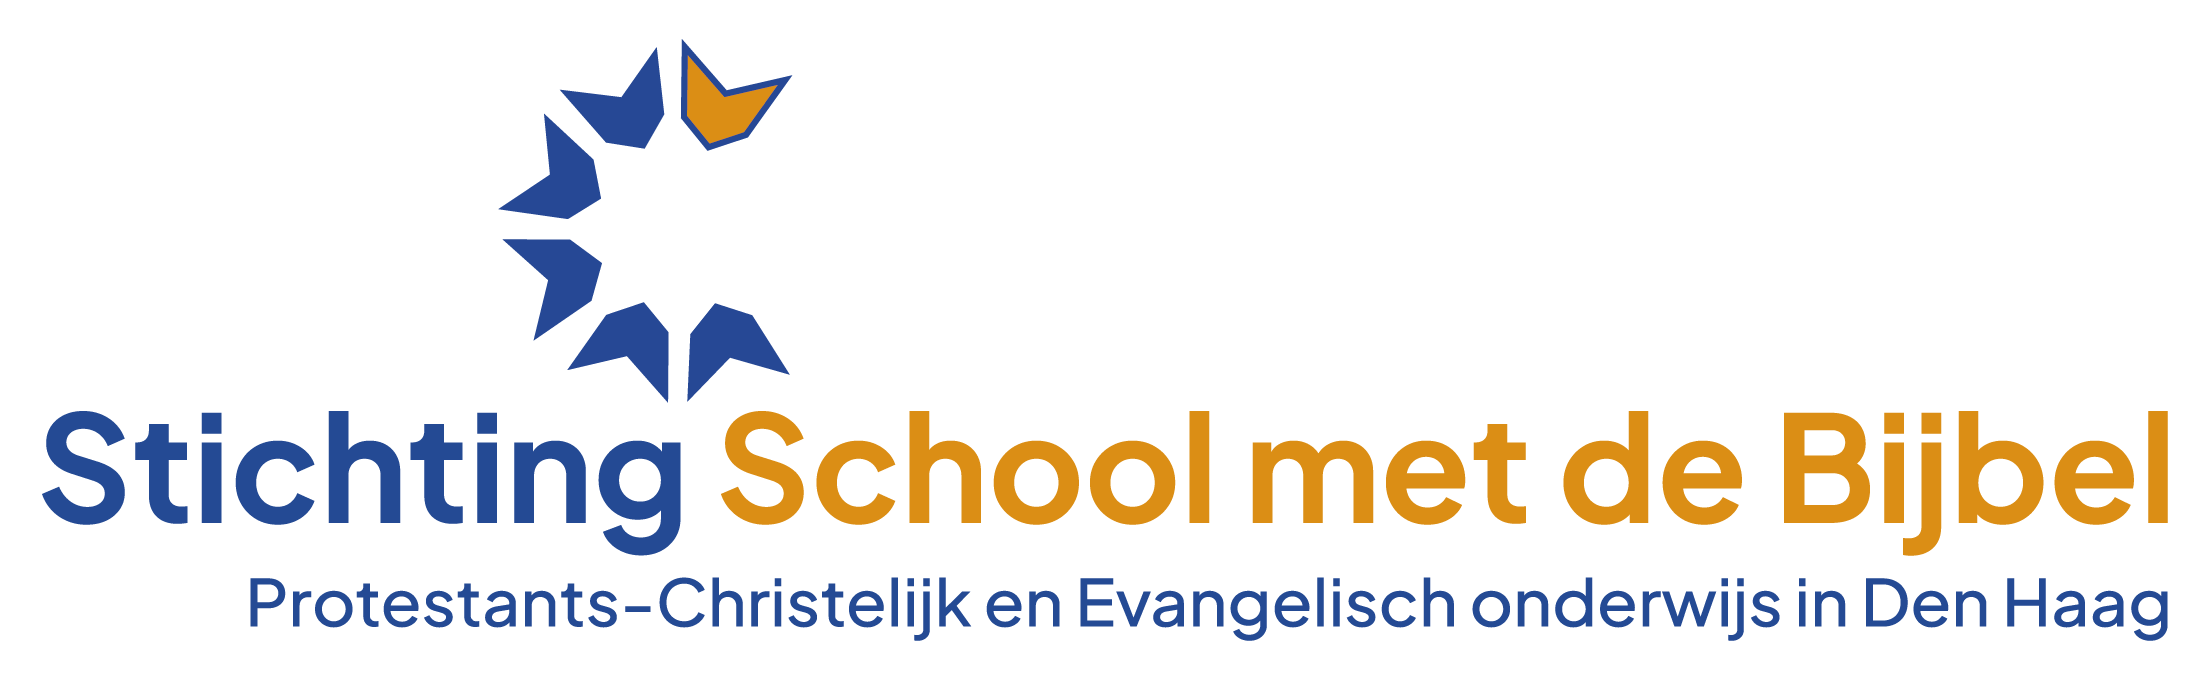 logo Stichting School met de Bijbel Den Haag